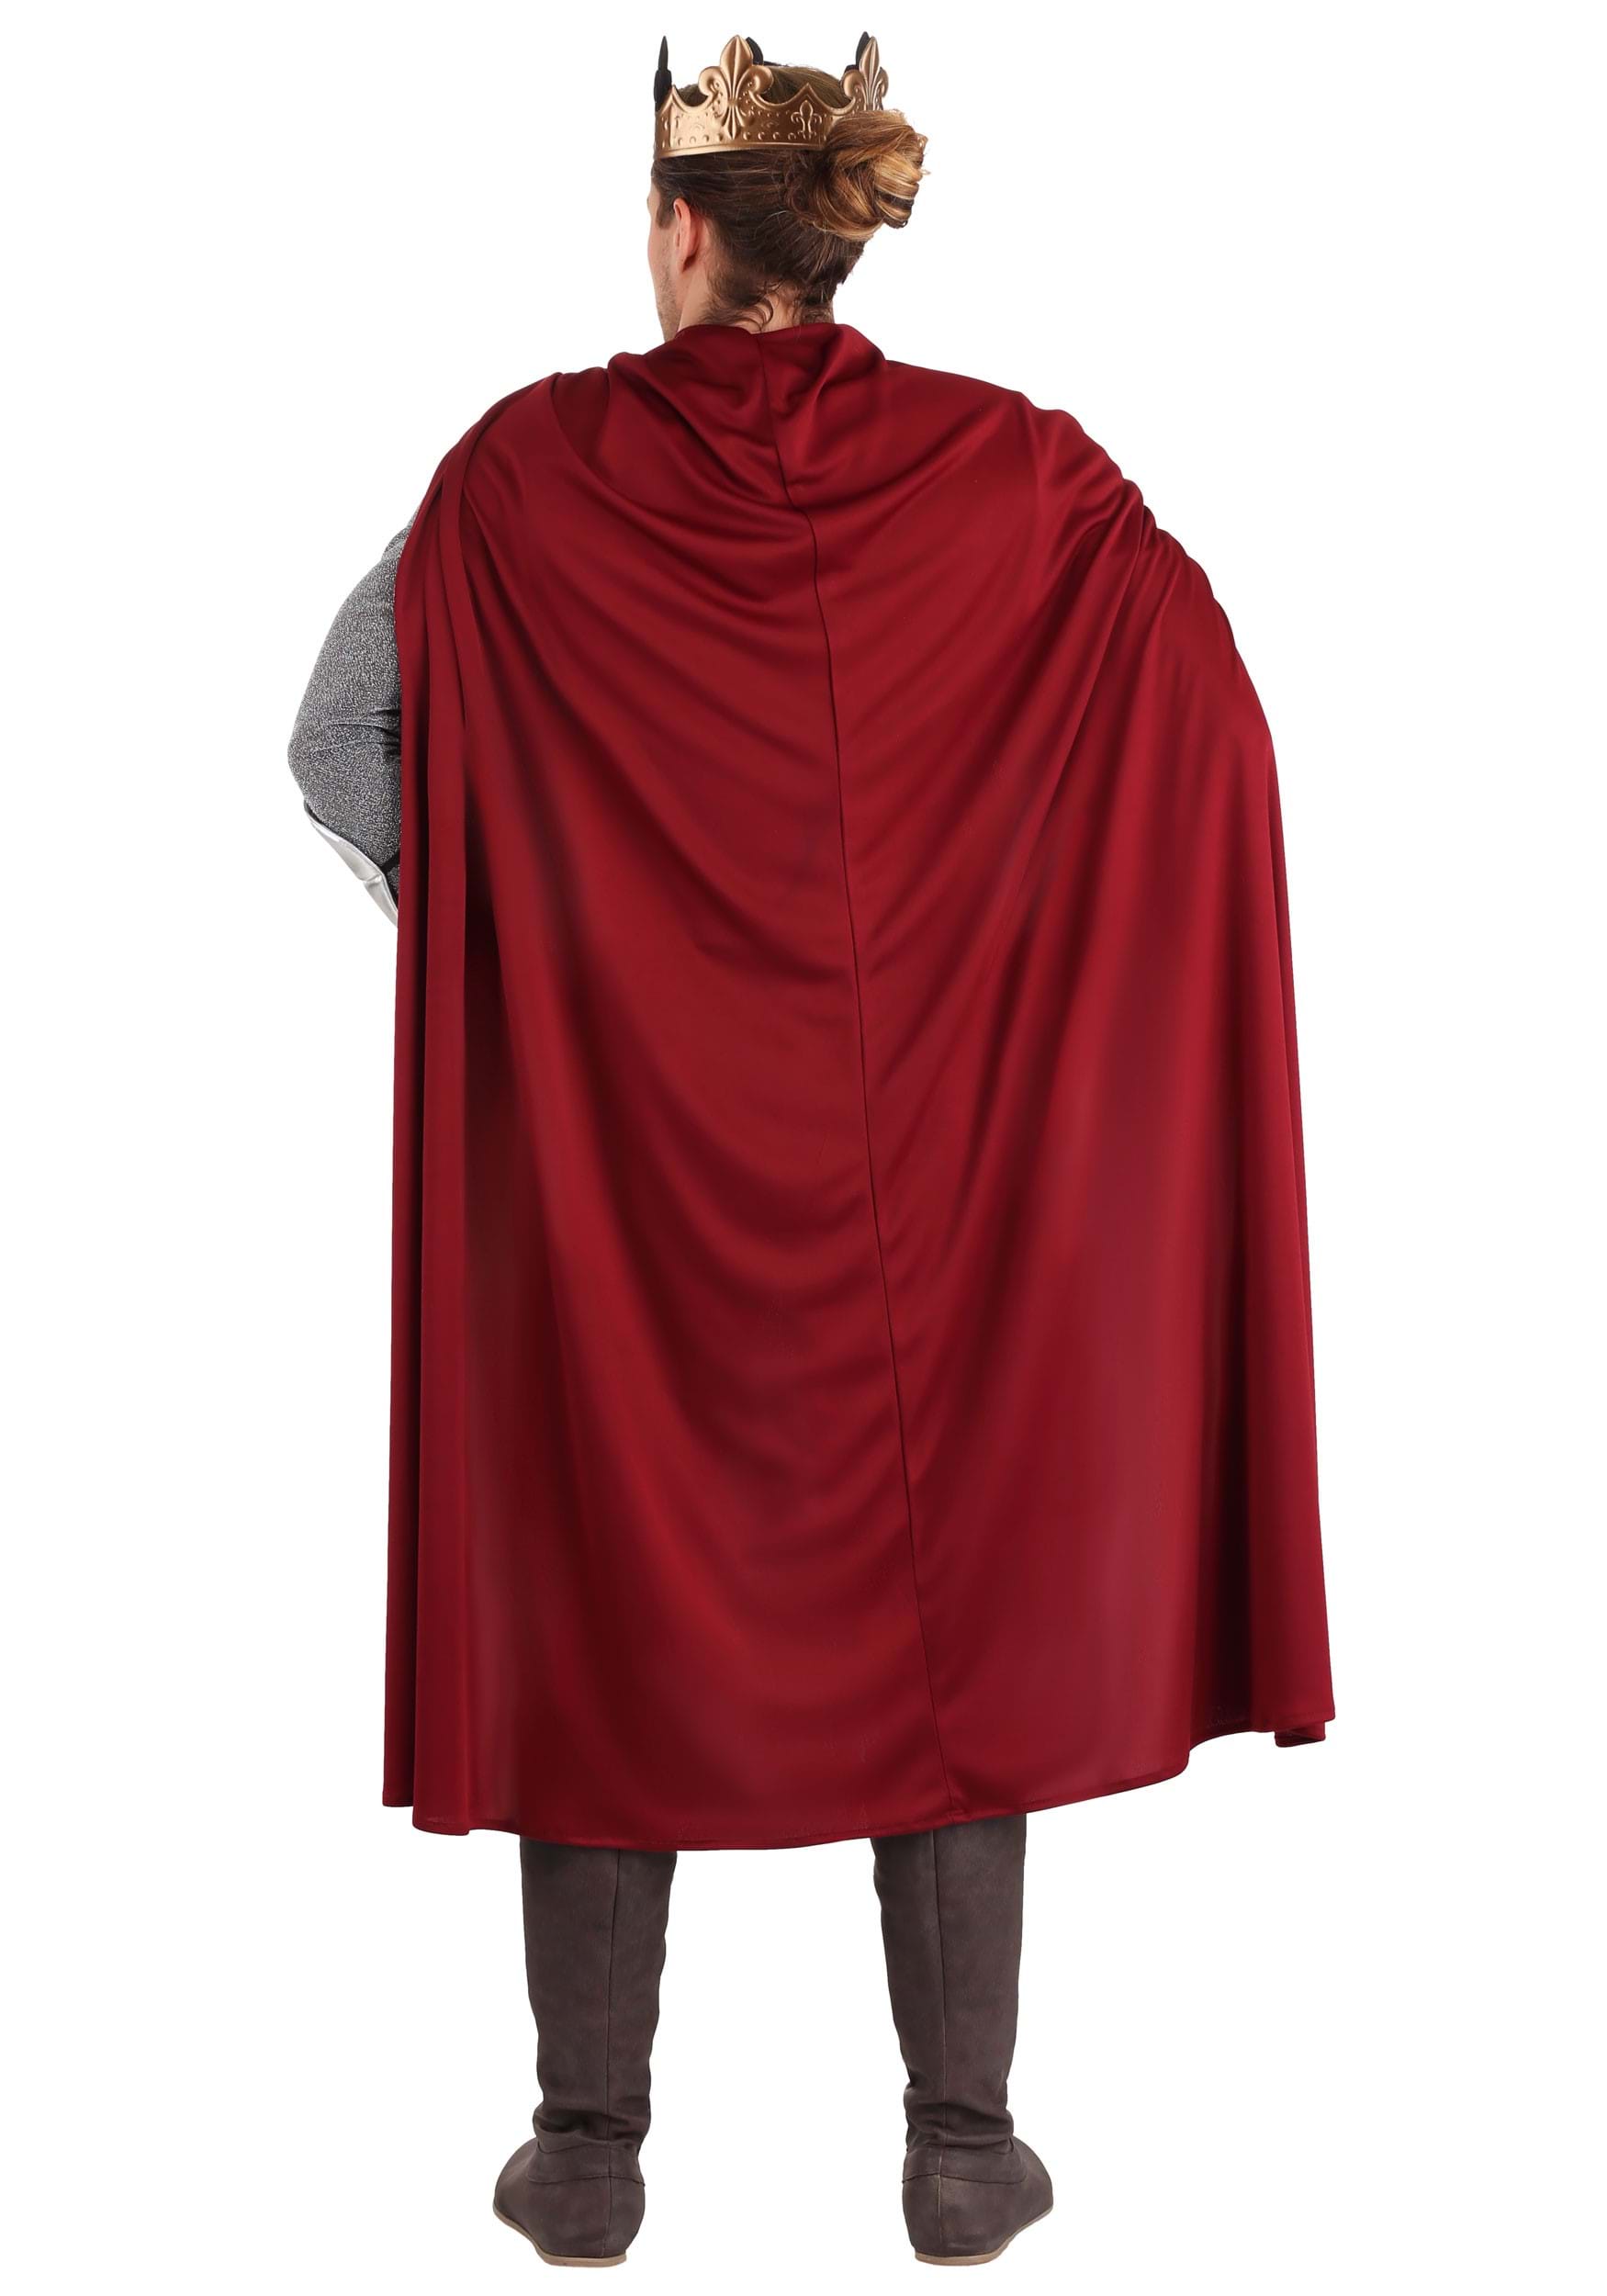 Men's Lionheart Knight Fancy Dress Costume